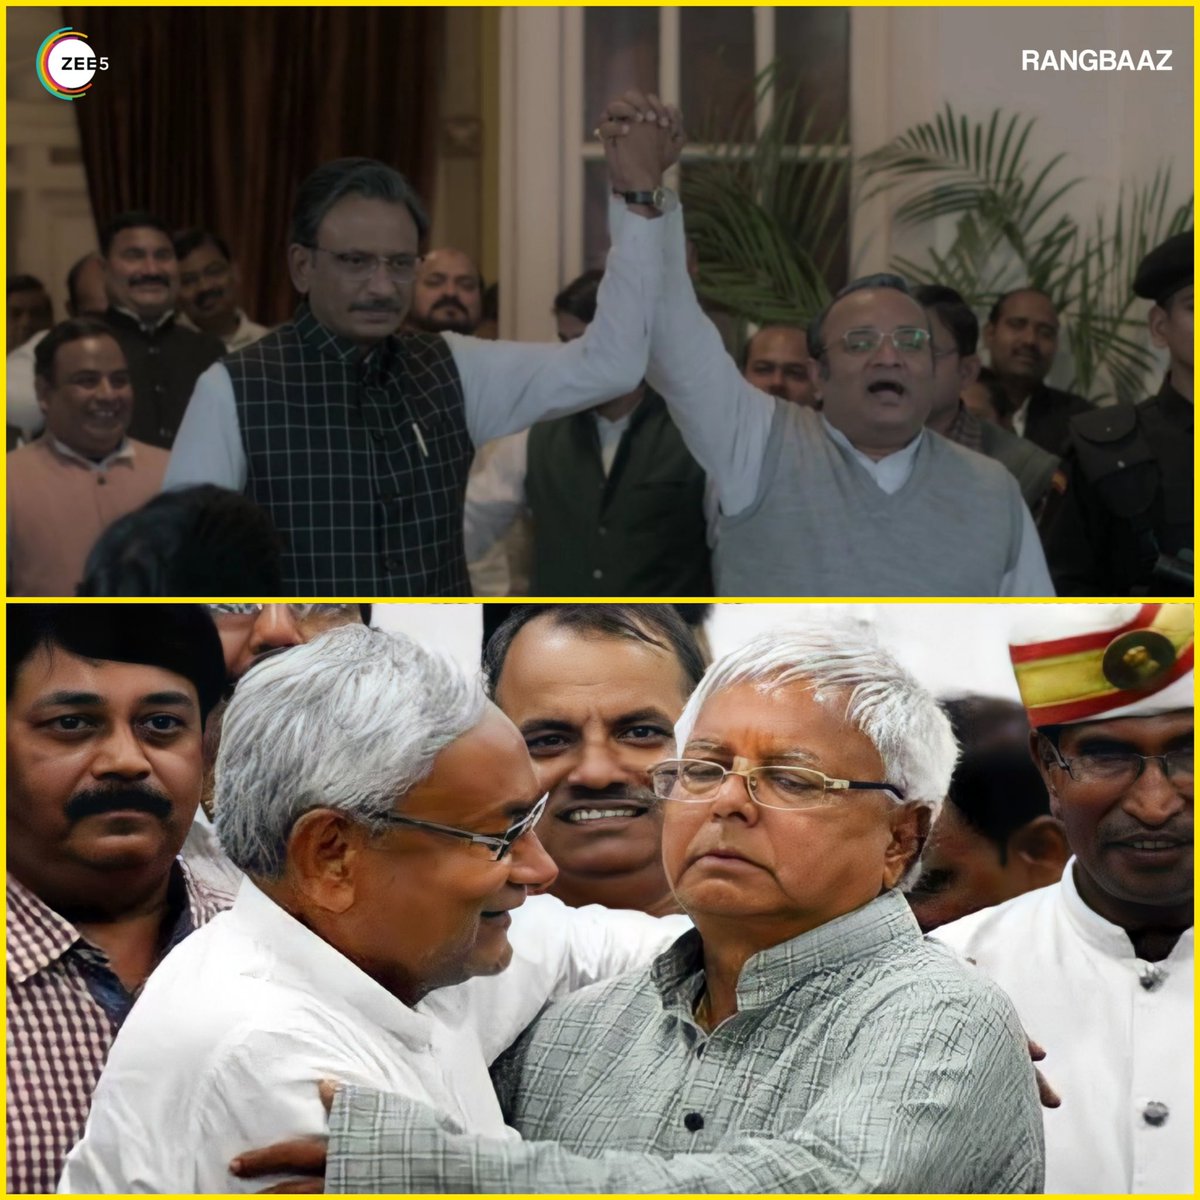 Ye #BiharPolitics aur #Rangbaaz me itna correlation hai ki samajh nahi aa raha serial politics se inspired hai ye Nitish-Lalu ne serial dekh kar mahagathbandhan banaya hai.